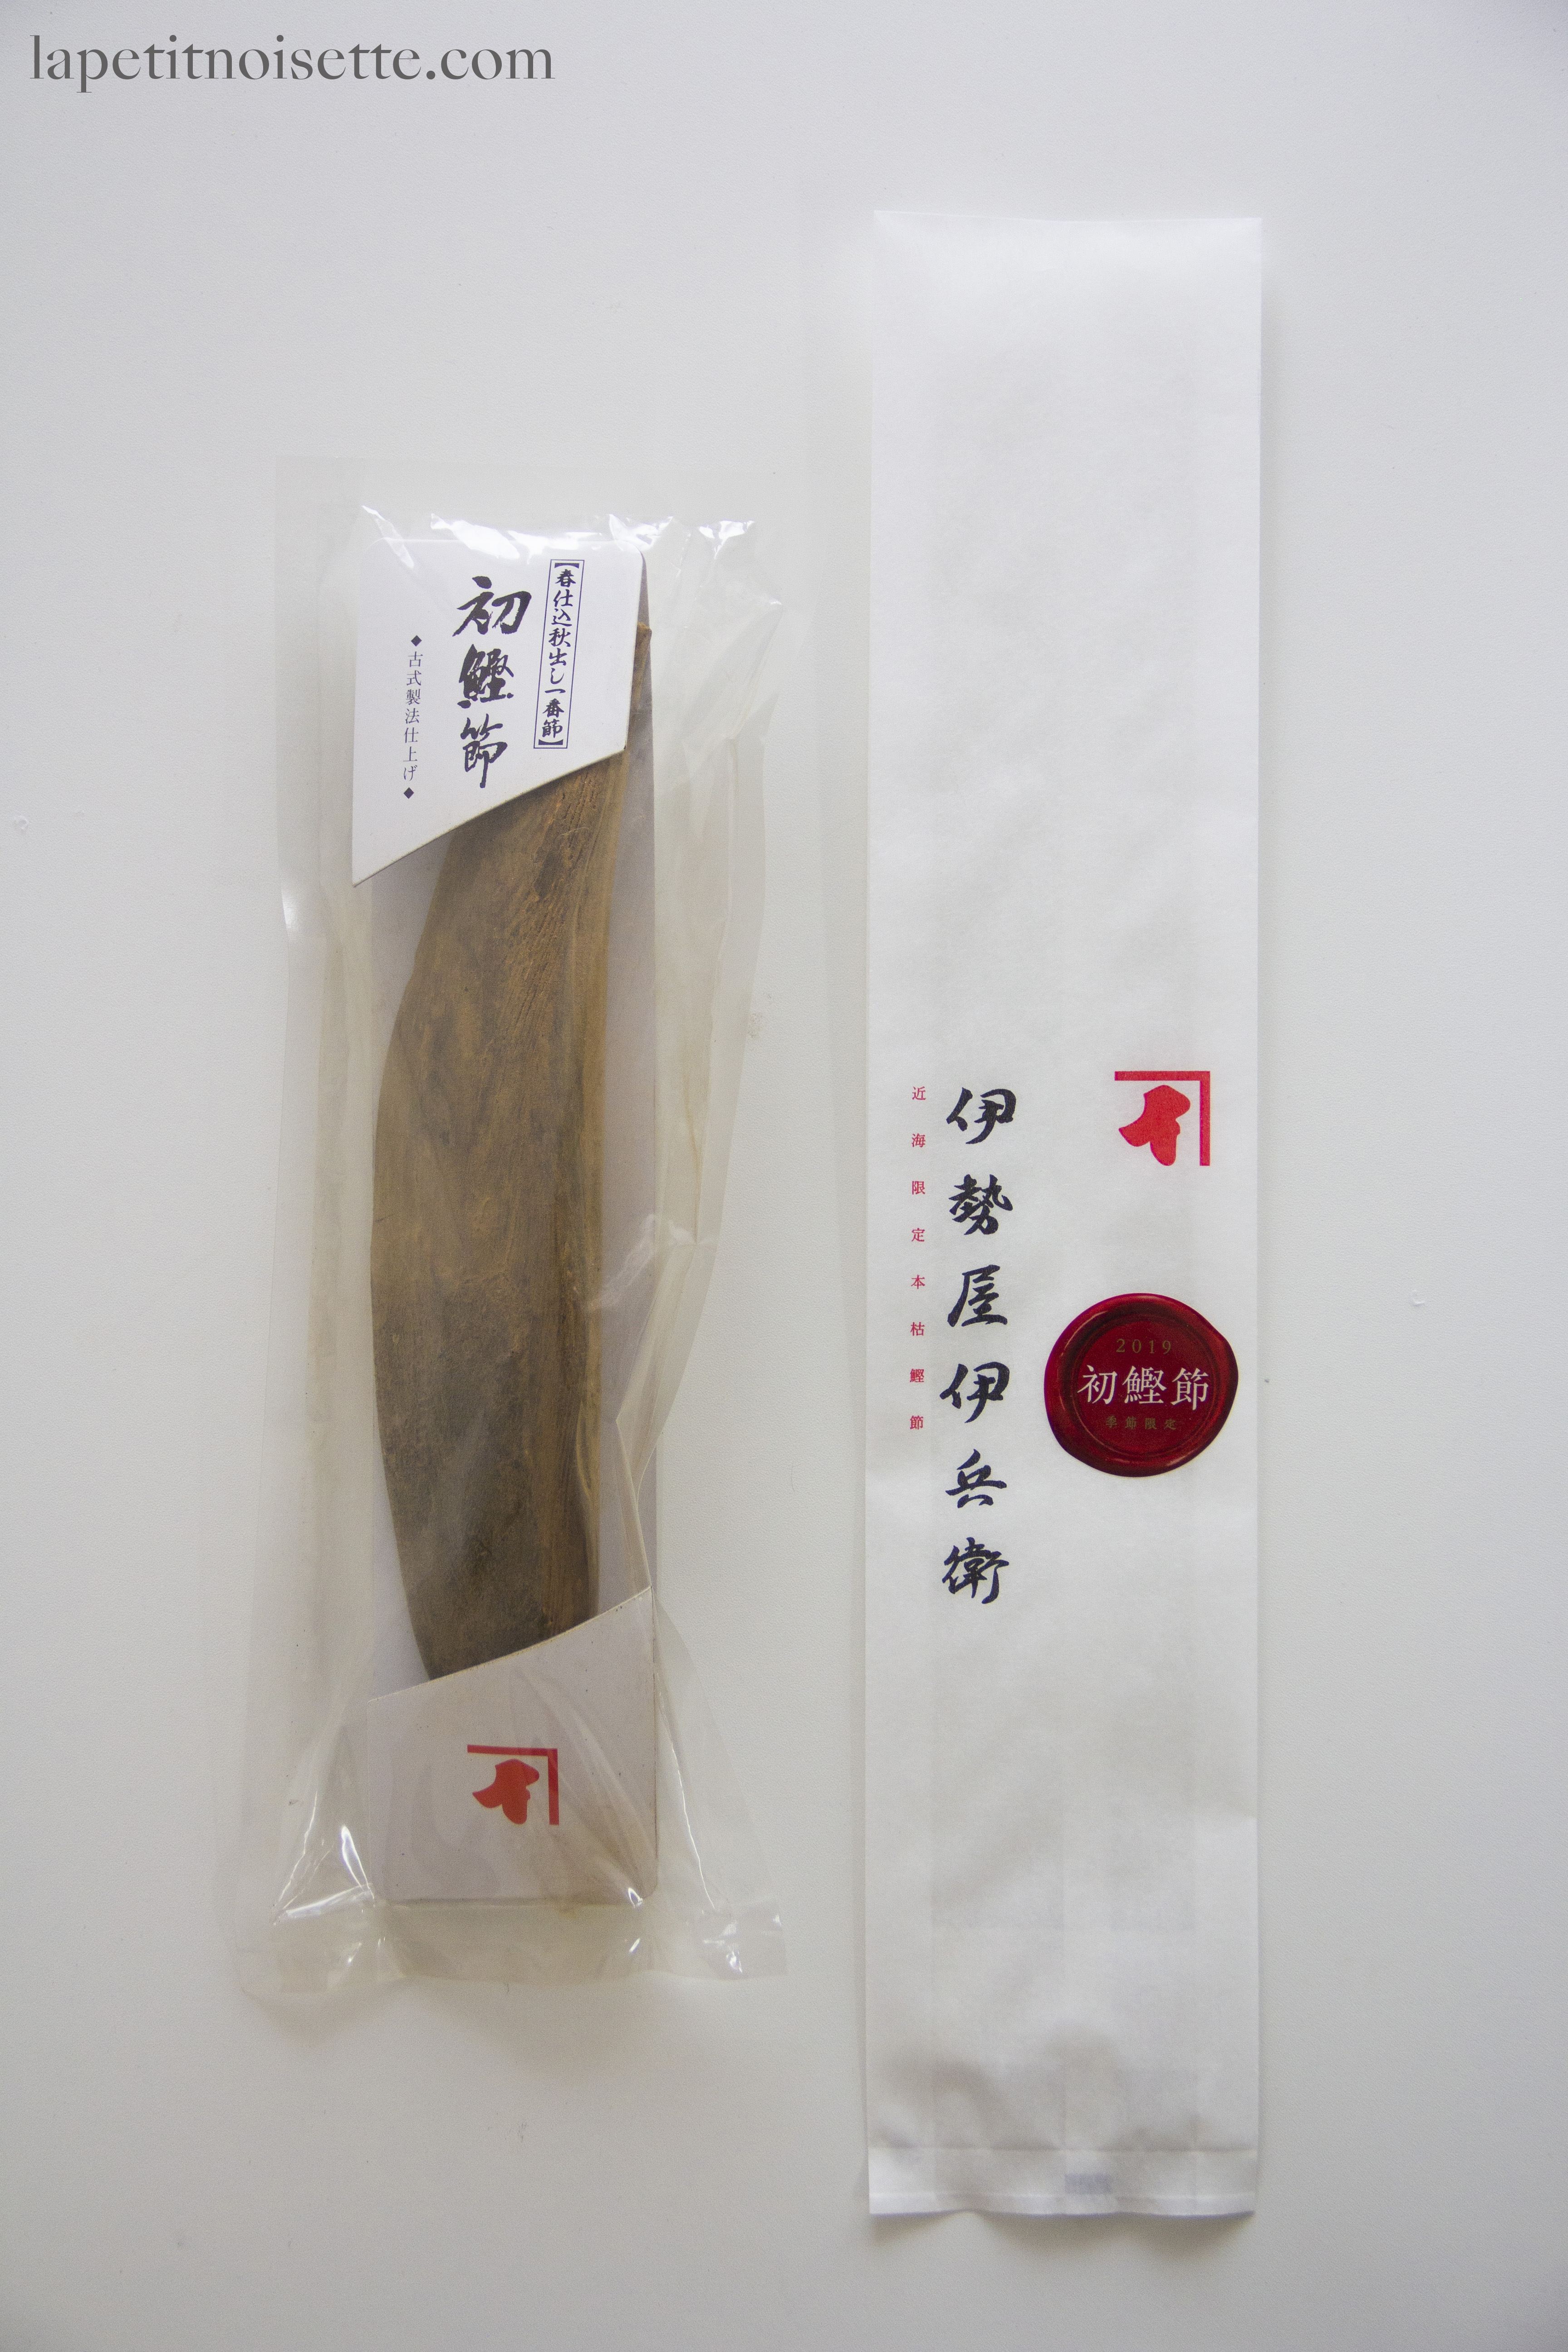 初鰹 hatsu katsuo caught in May that has been made into premium Katsuobushi.